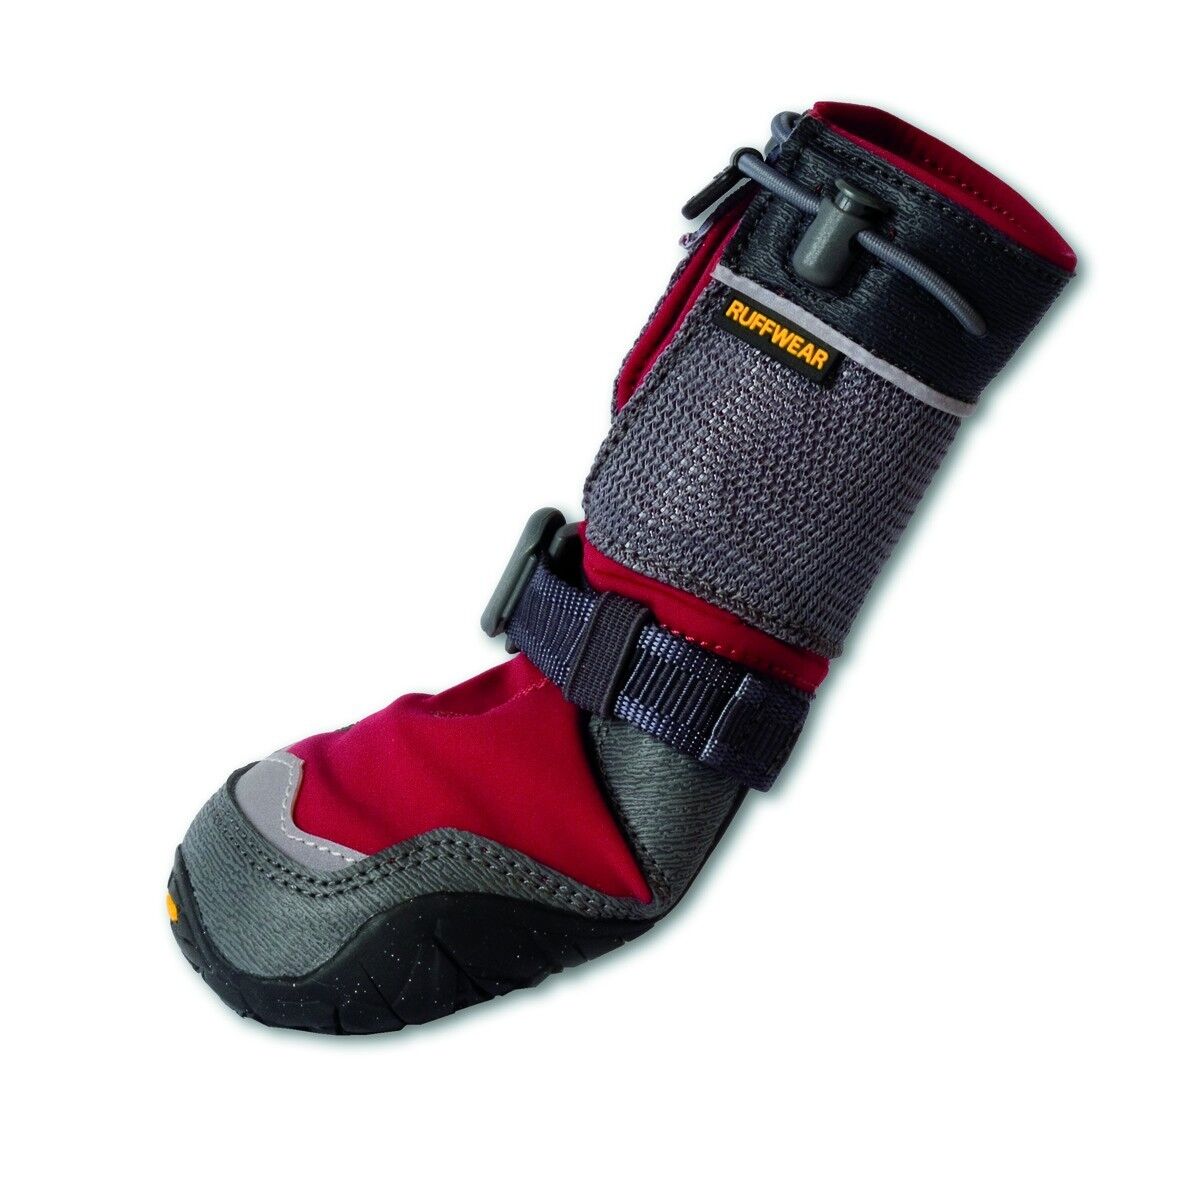 RUFFWEAR BARK N BOOTS POLAR TREX (1530-605) winter traction grip insulated shoe